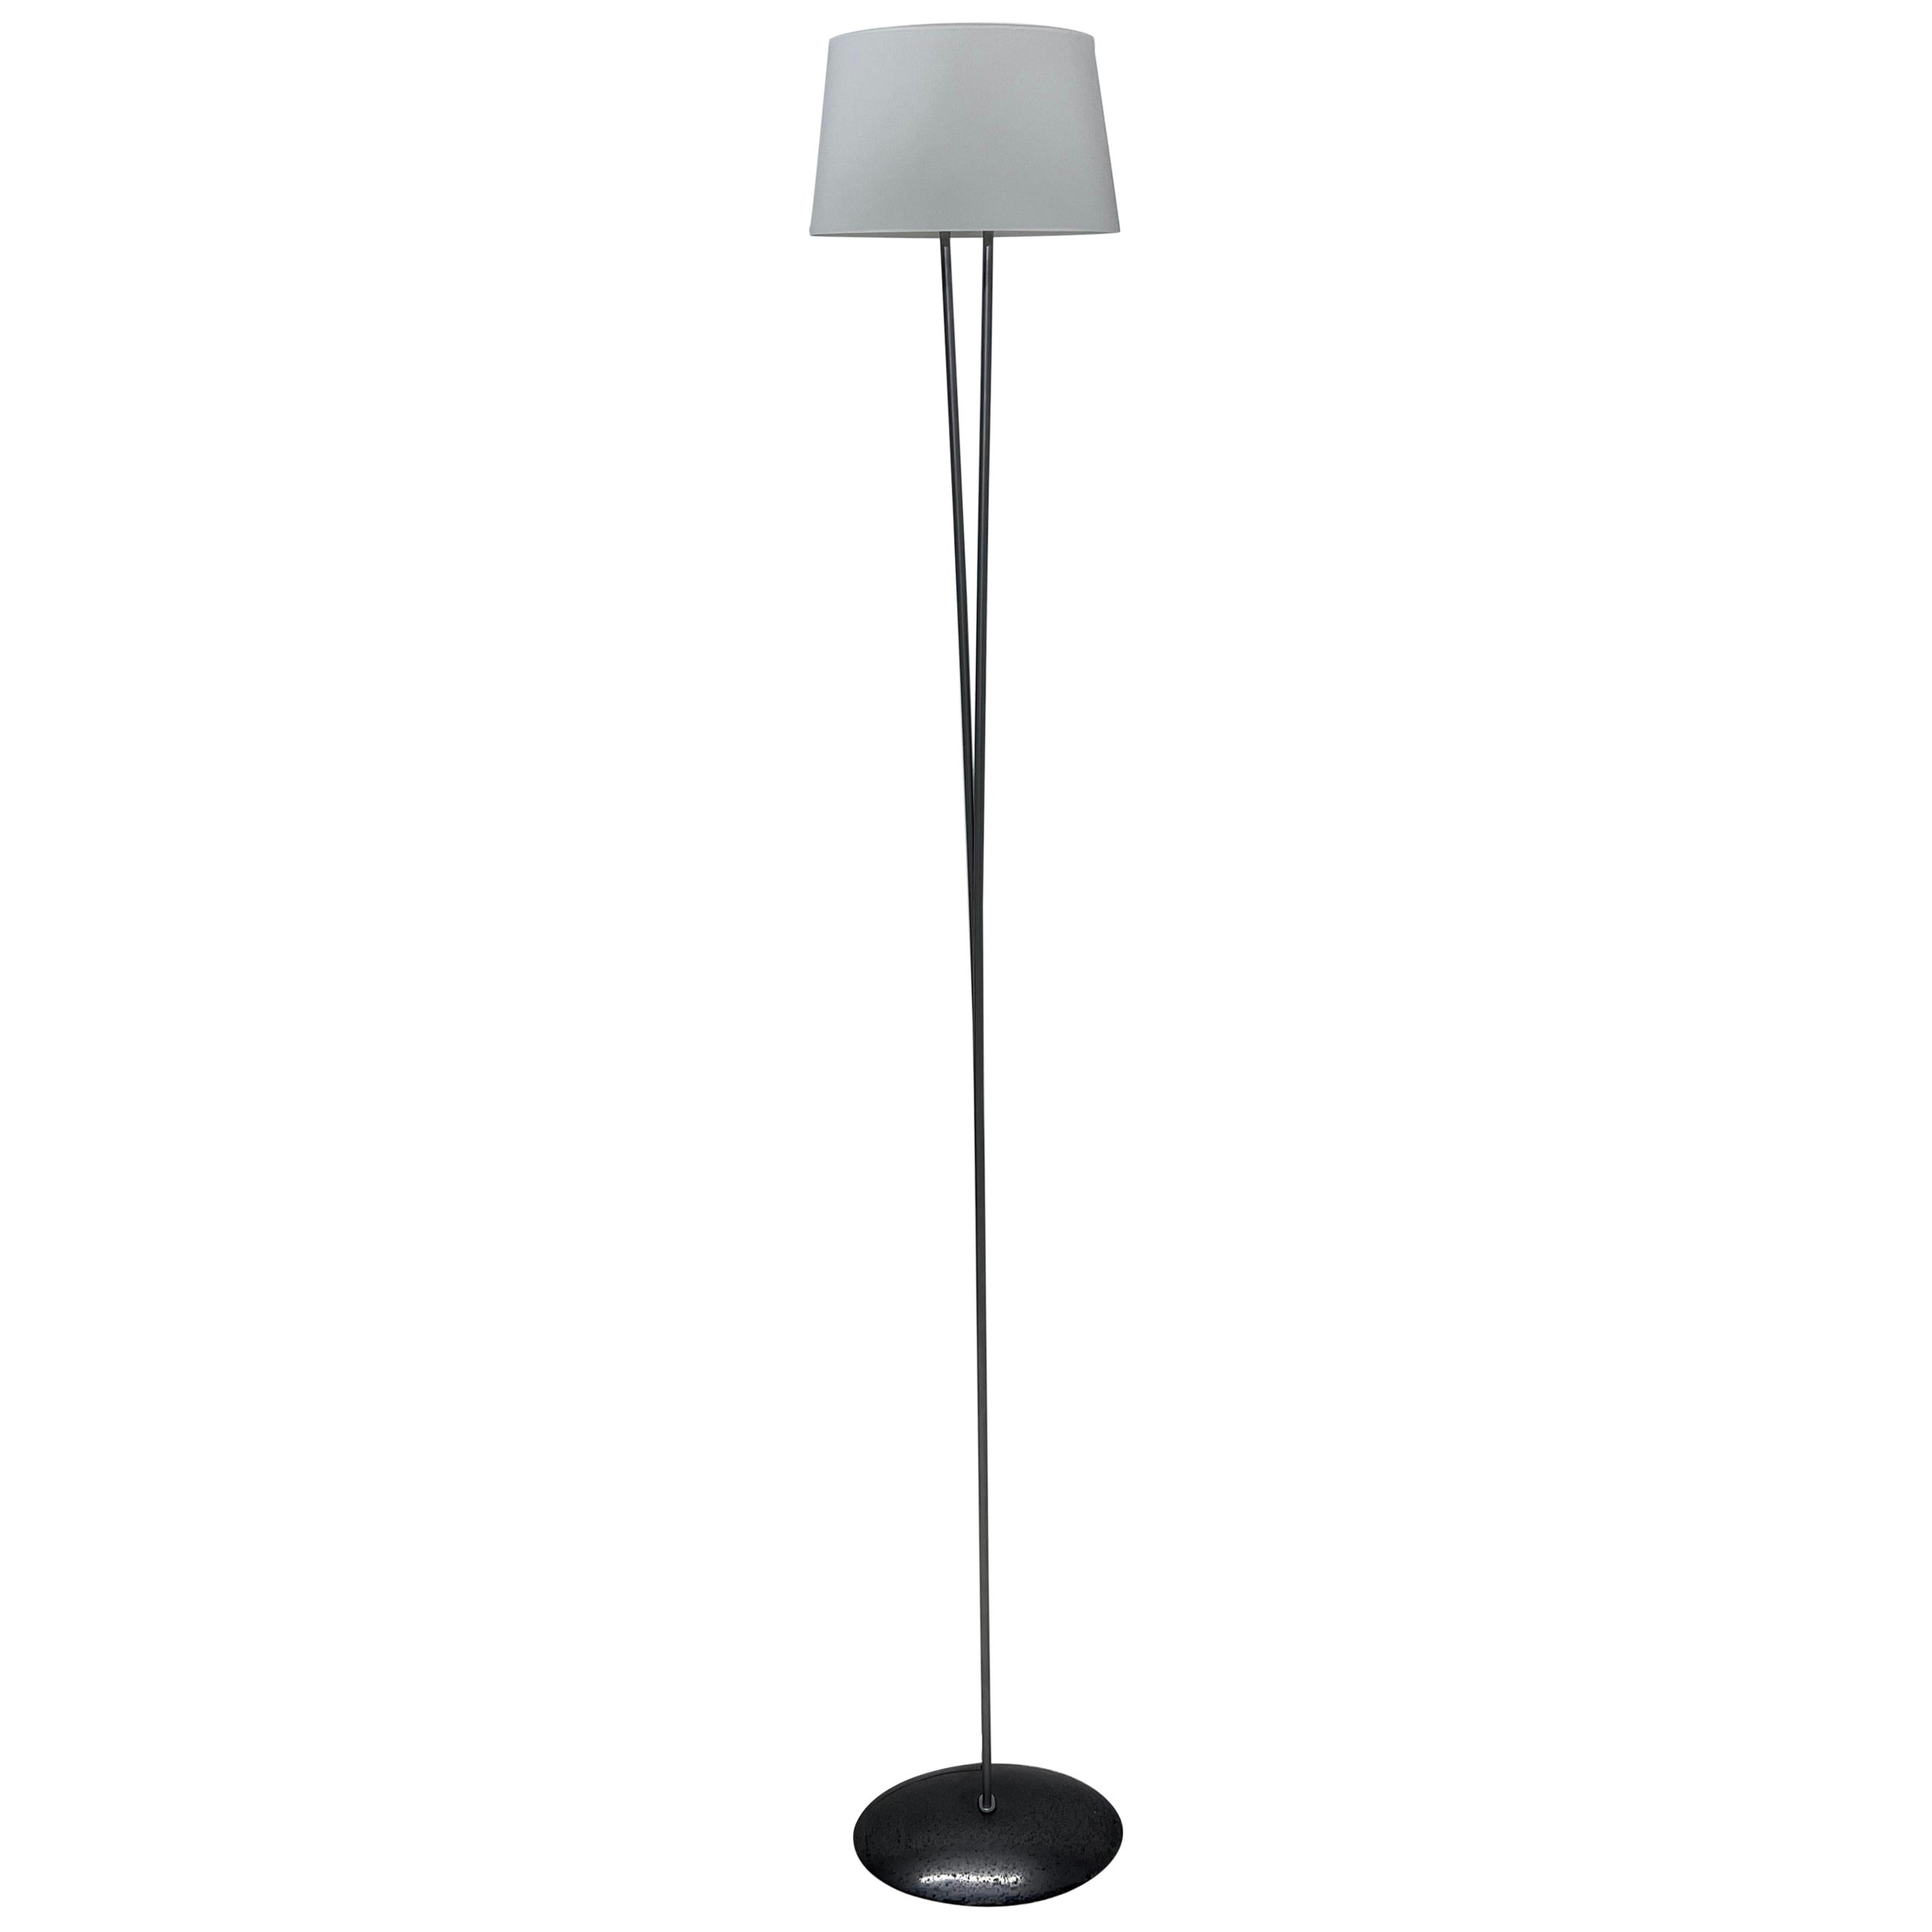 Valerio Bottin Vitt Terra Series White Murano and Steel Floor Lamp for Foscarini For Sale